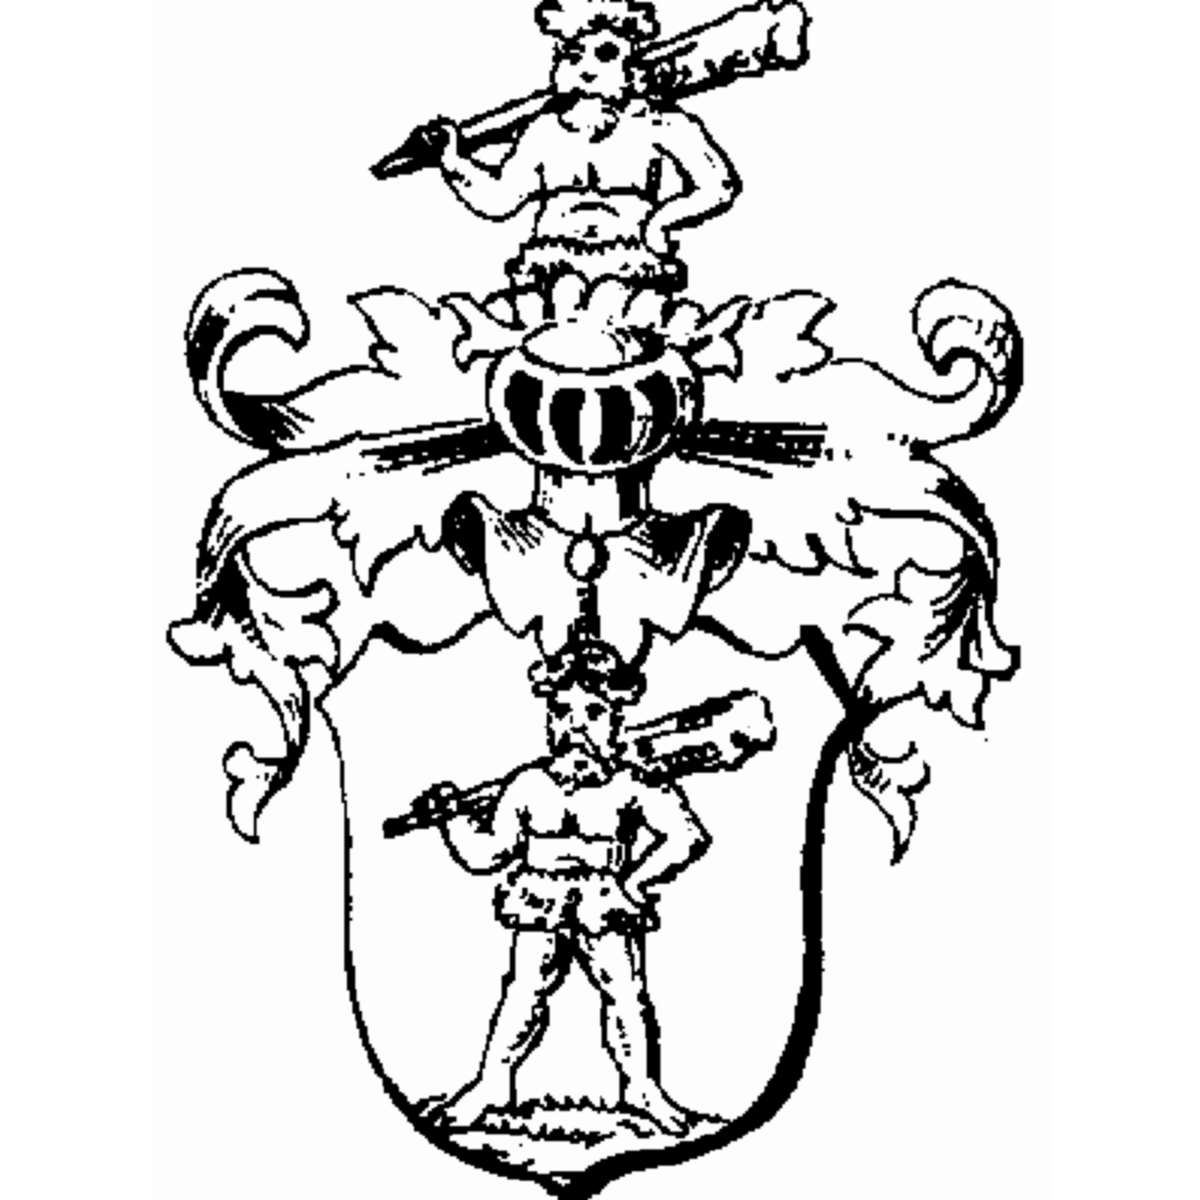 Wappen der Familie Anacker